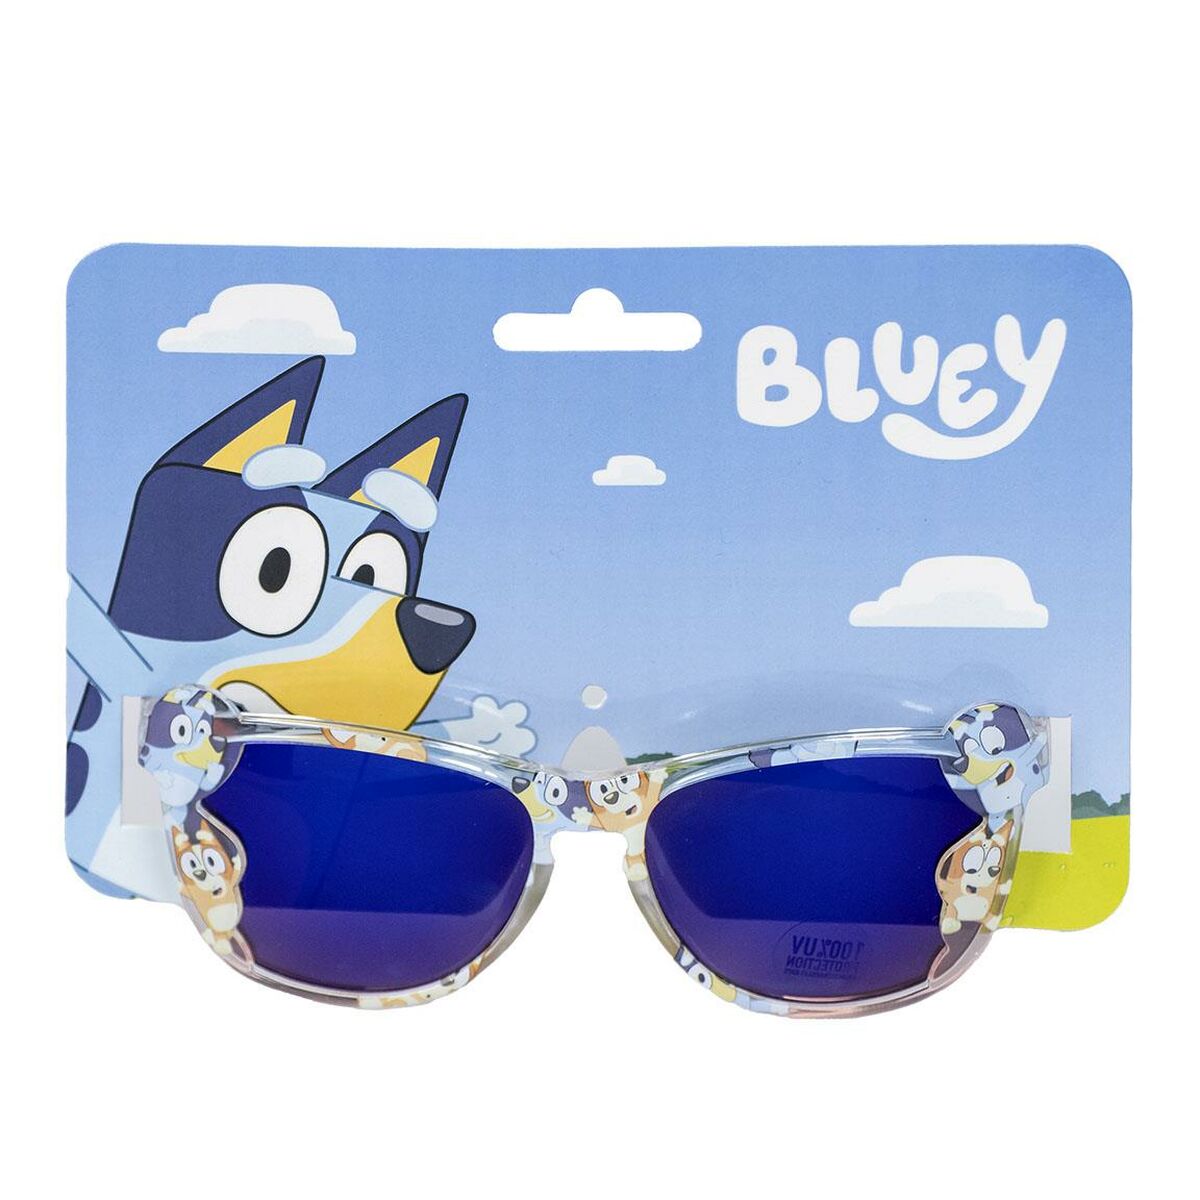 Kindersonnenbrille Bluey